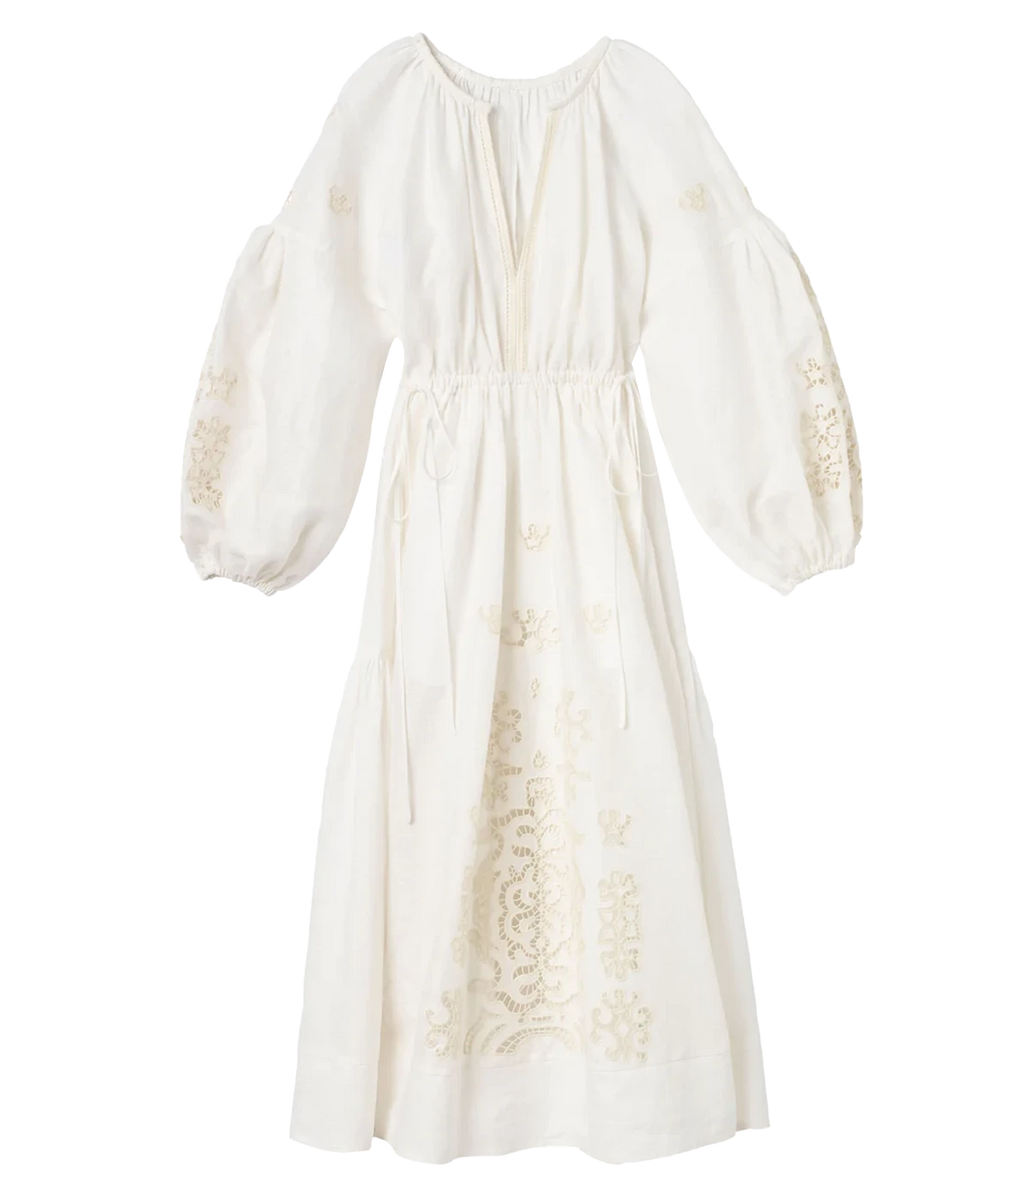 Capri Dress in White & Off White – Calexico